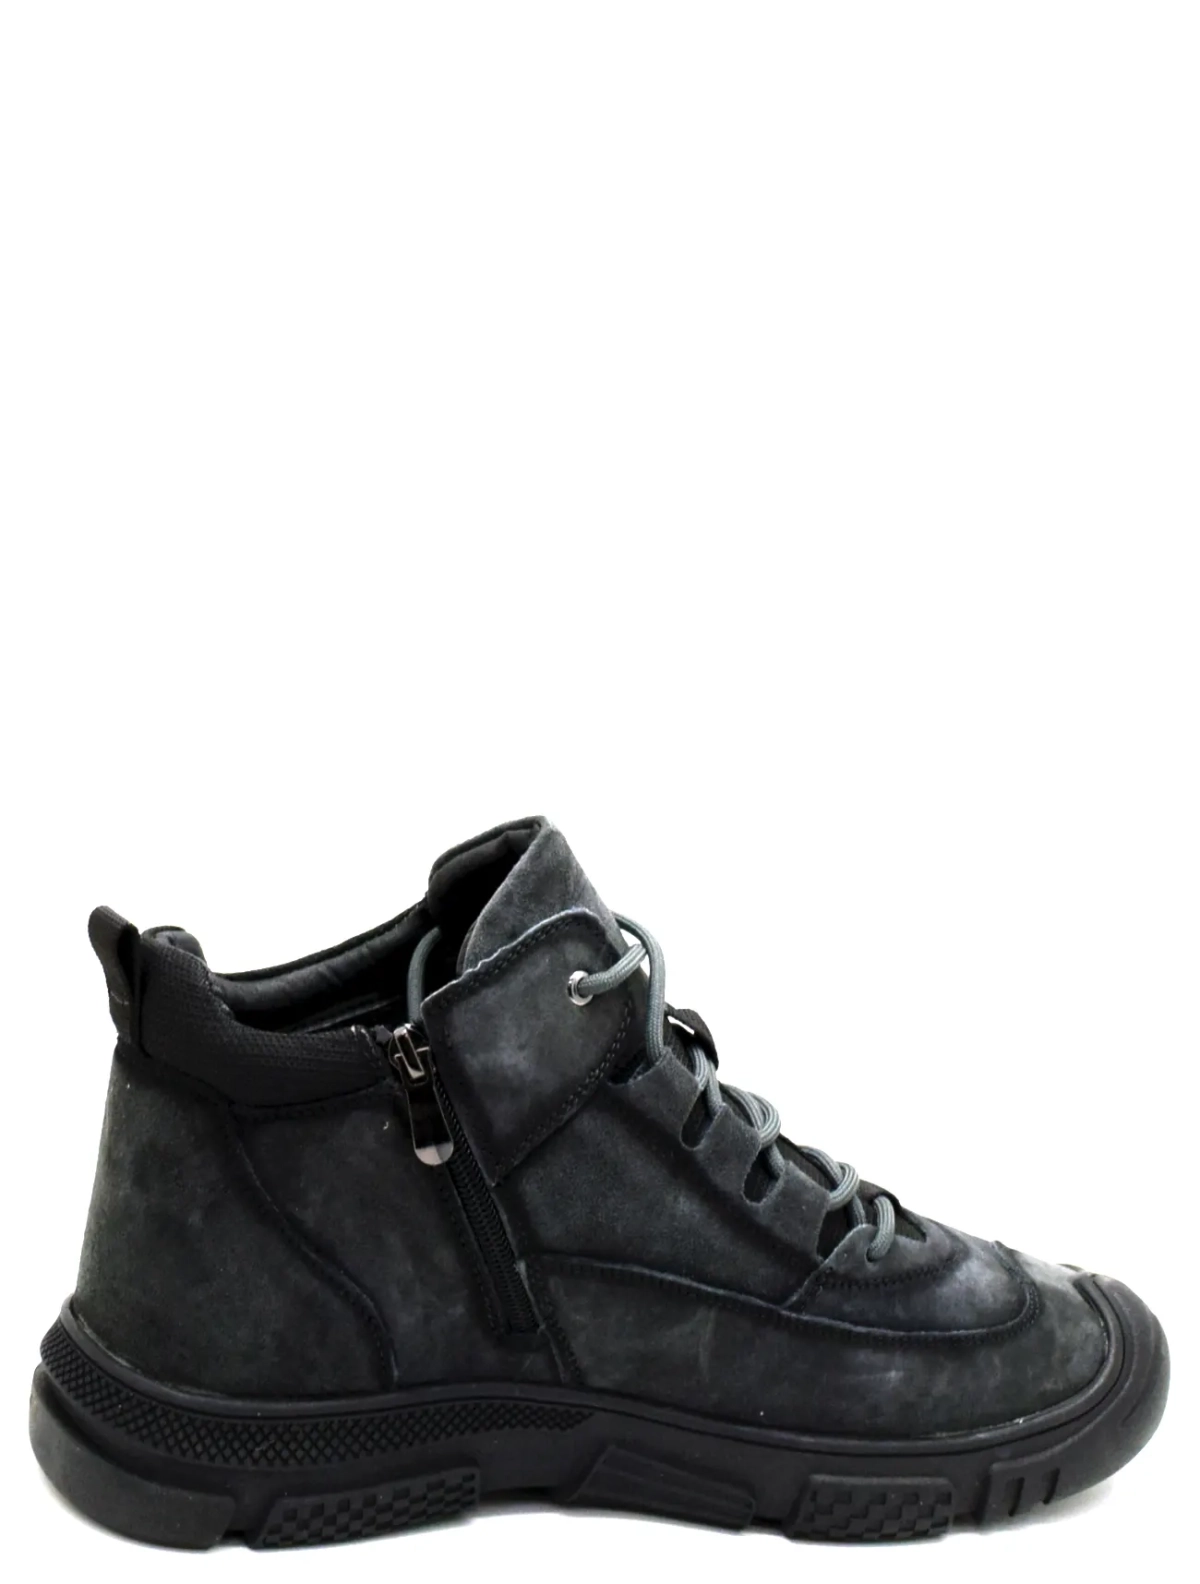 Baden ZN016-025 мужские кроссовки